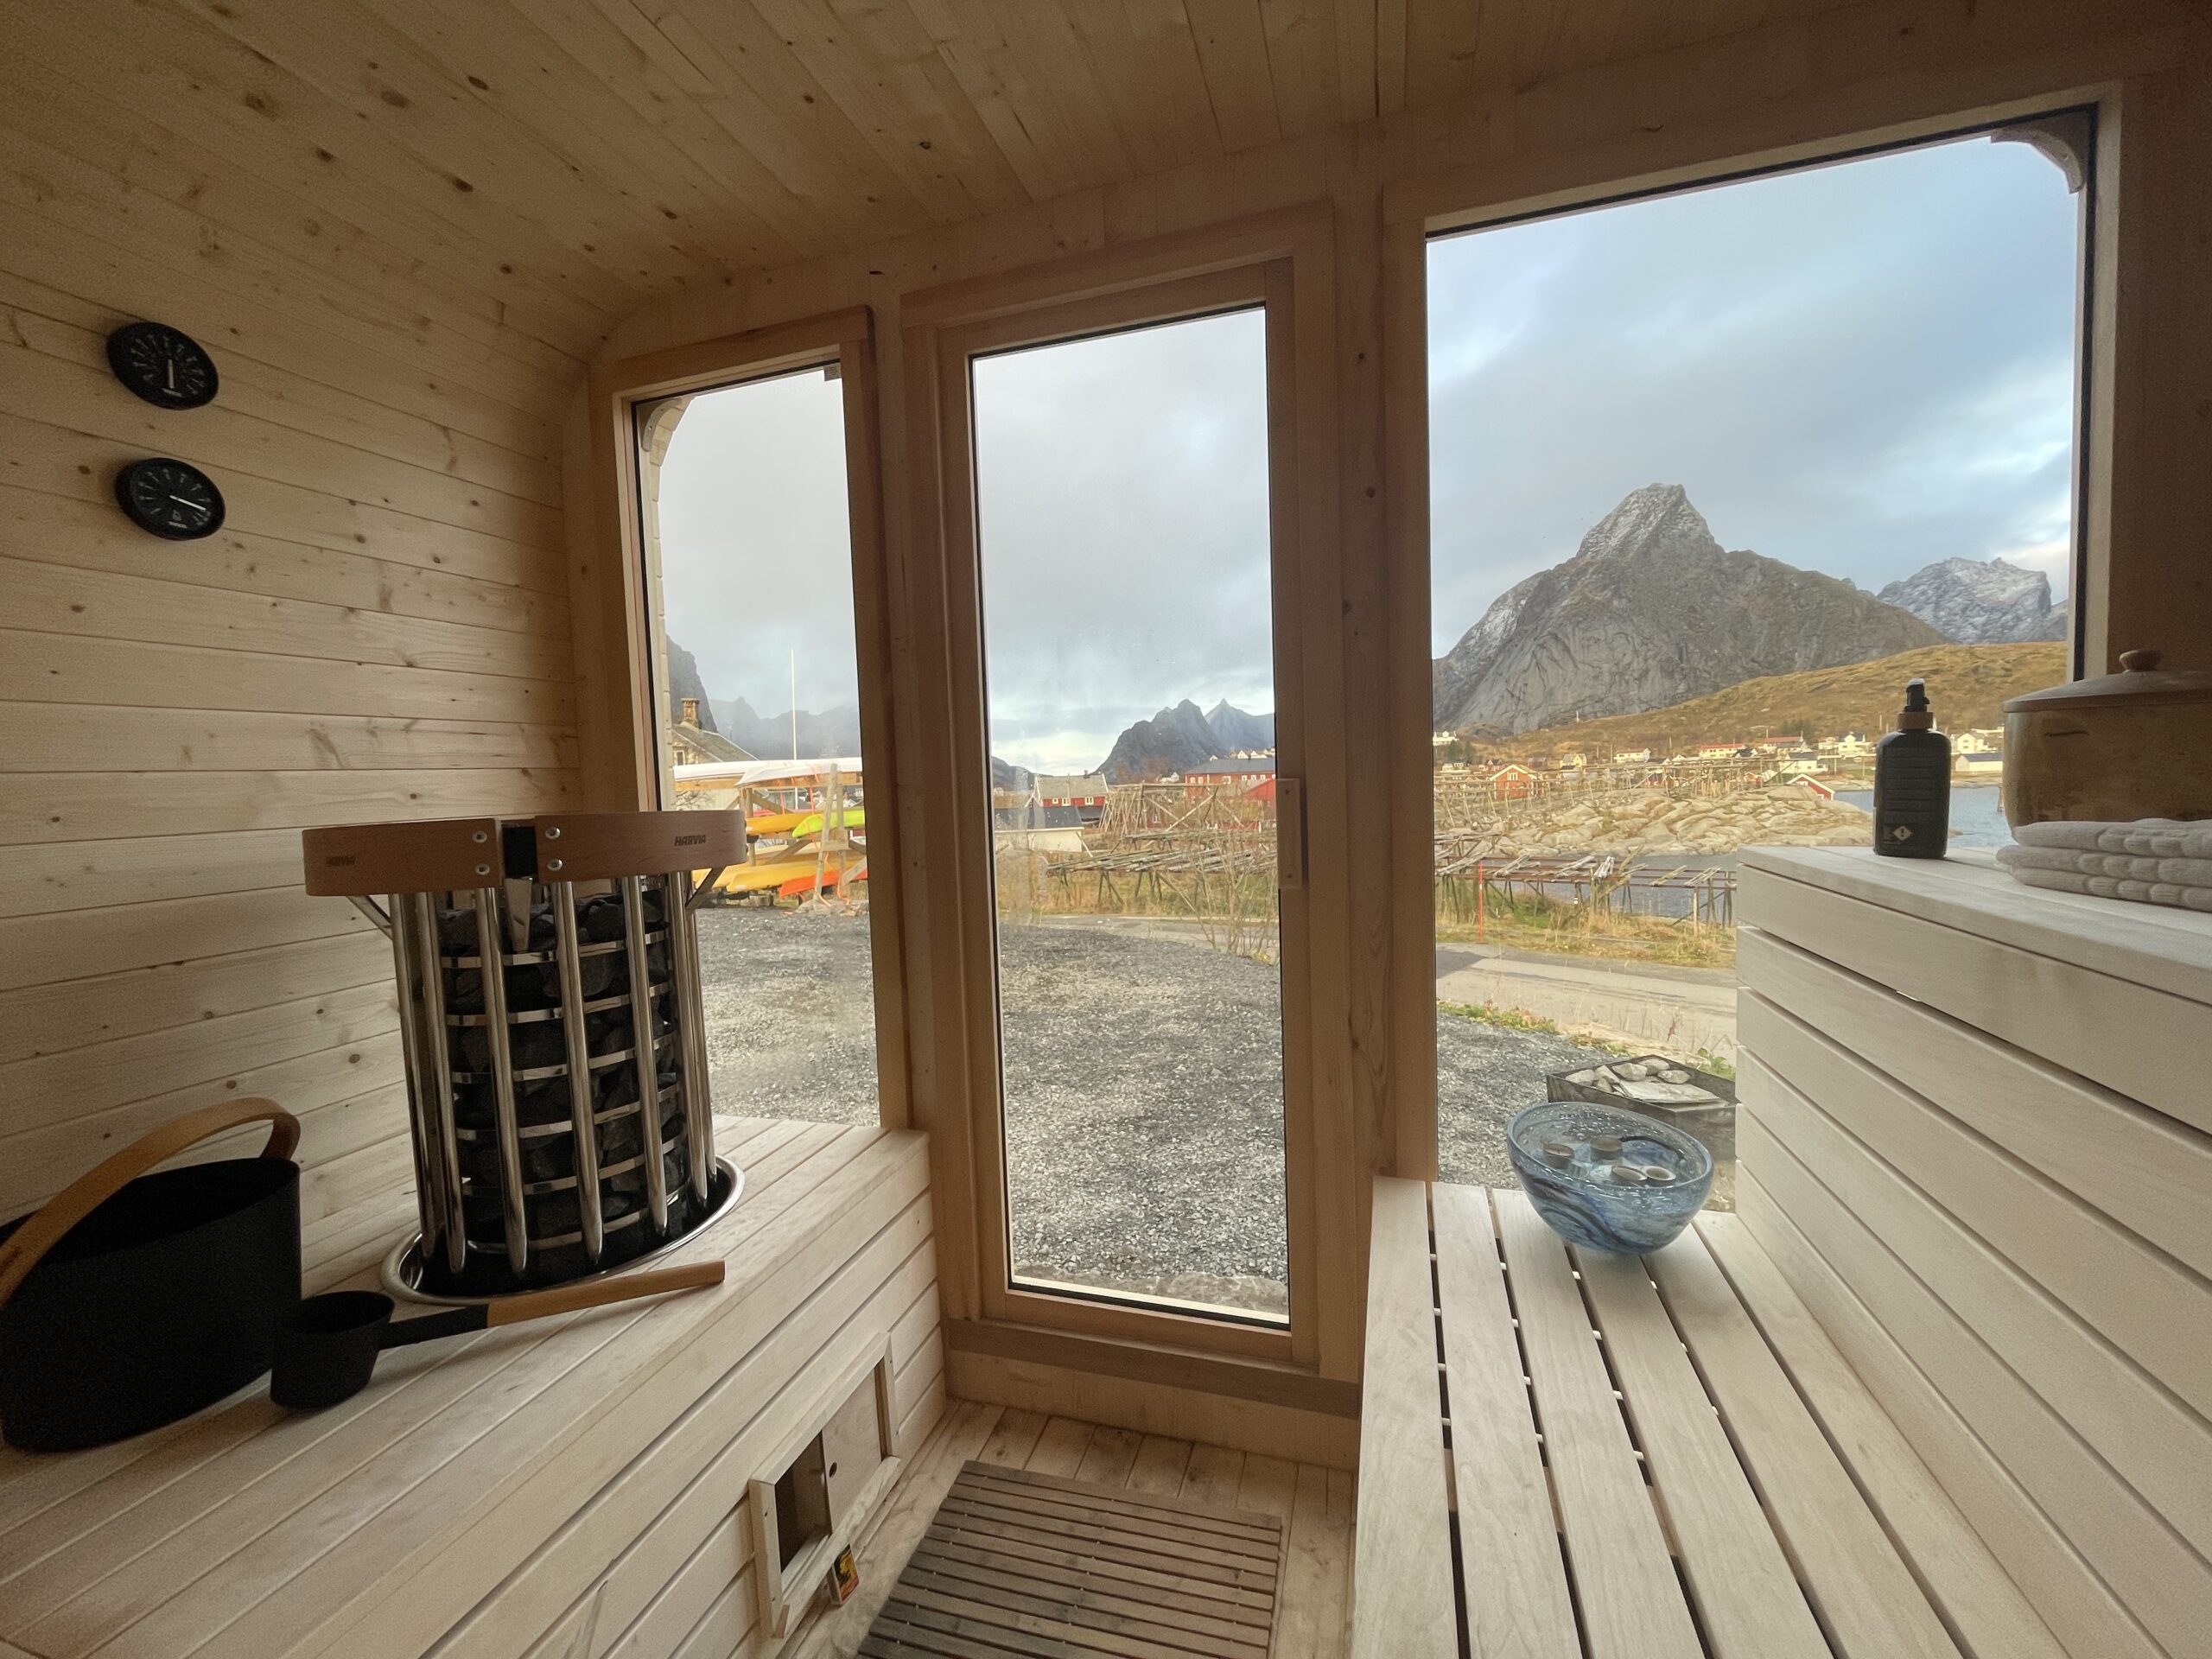 The Nordic Sauna